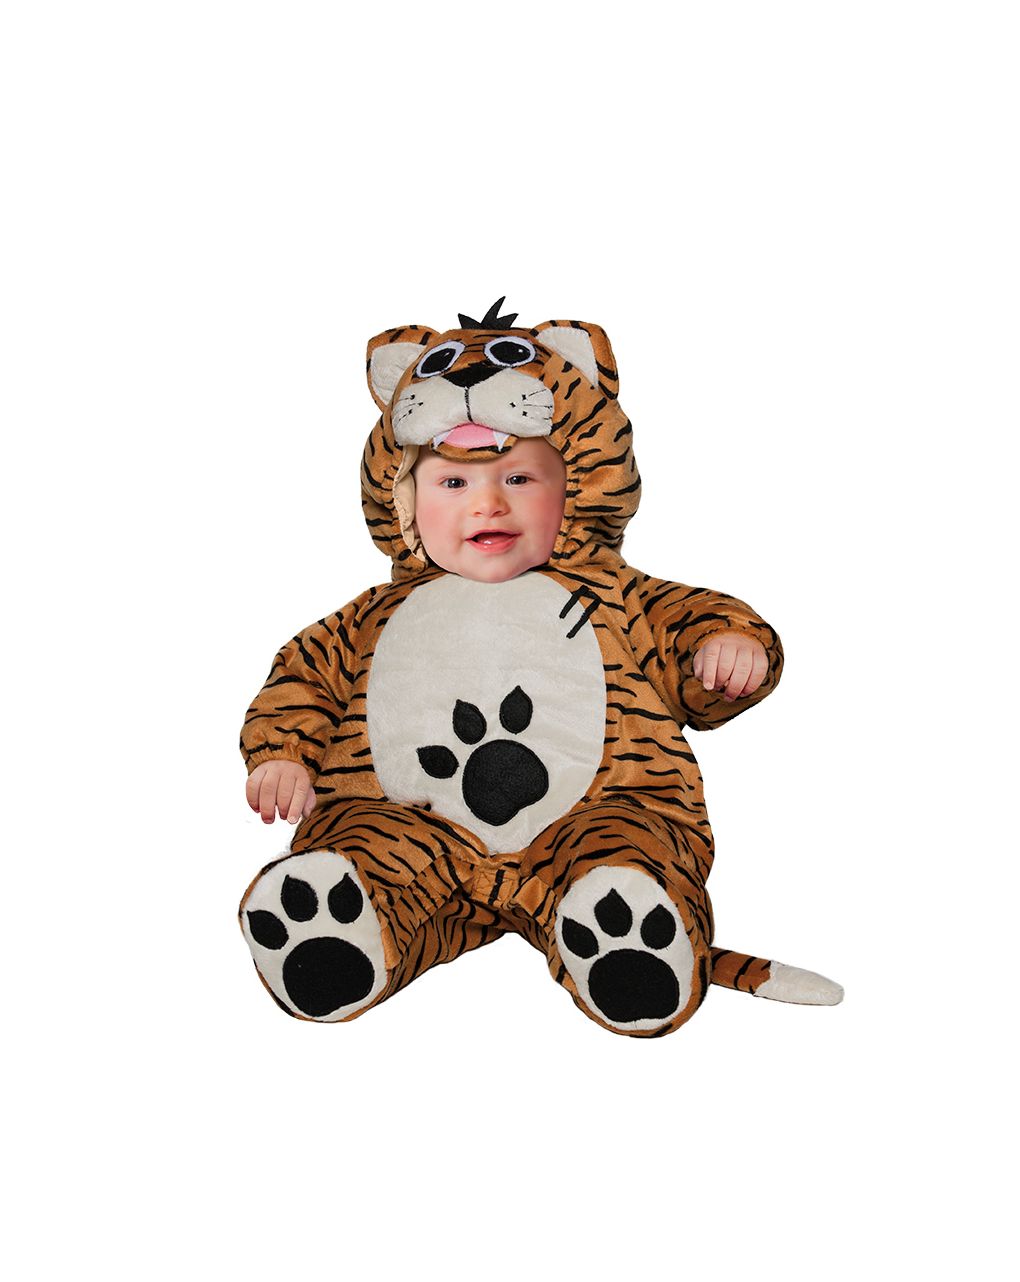 Superbaby tiger costume - carnaval queen - Carnaval Queen